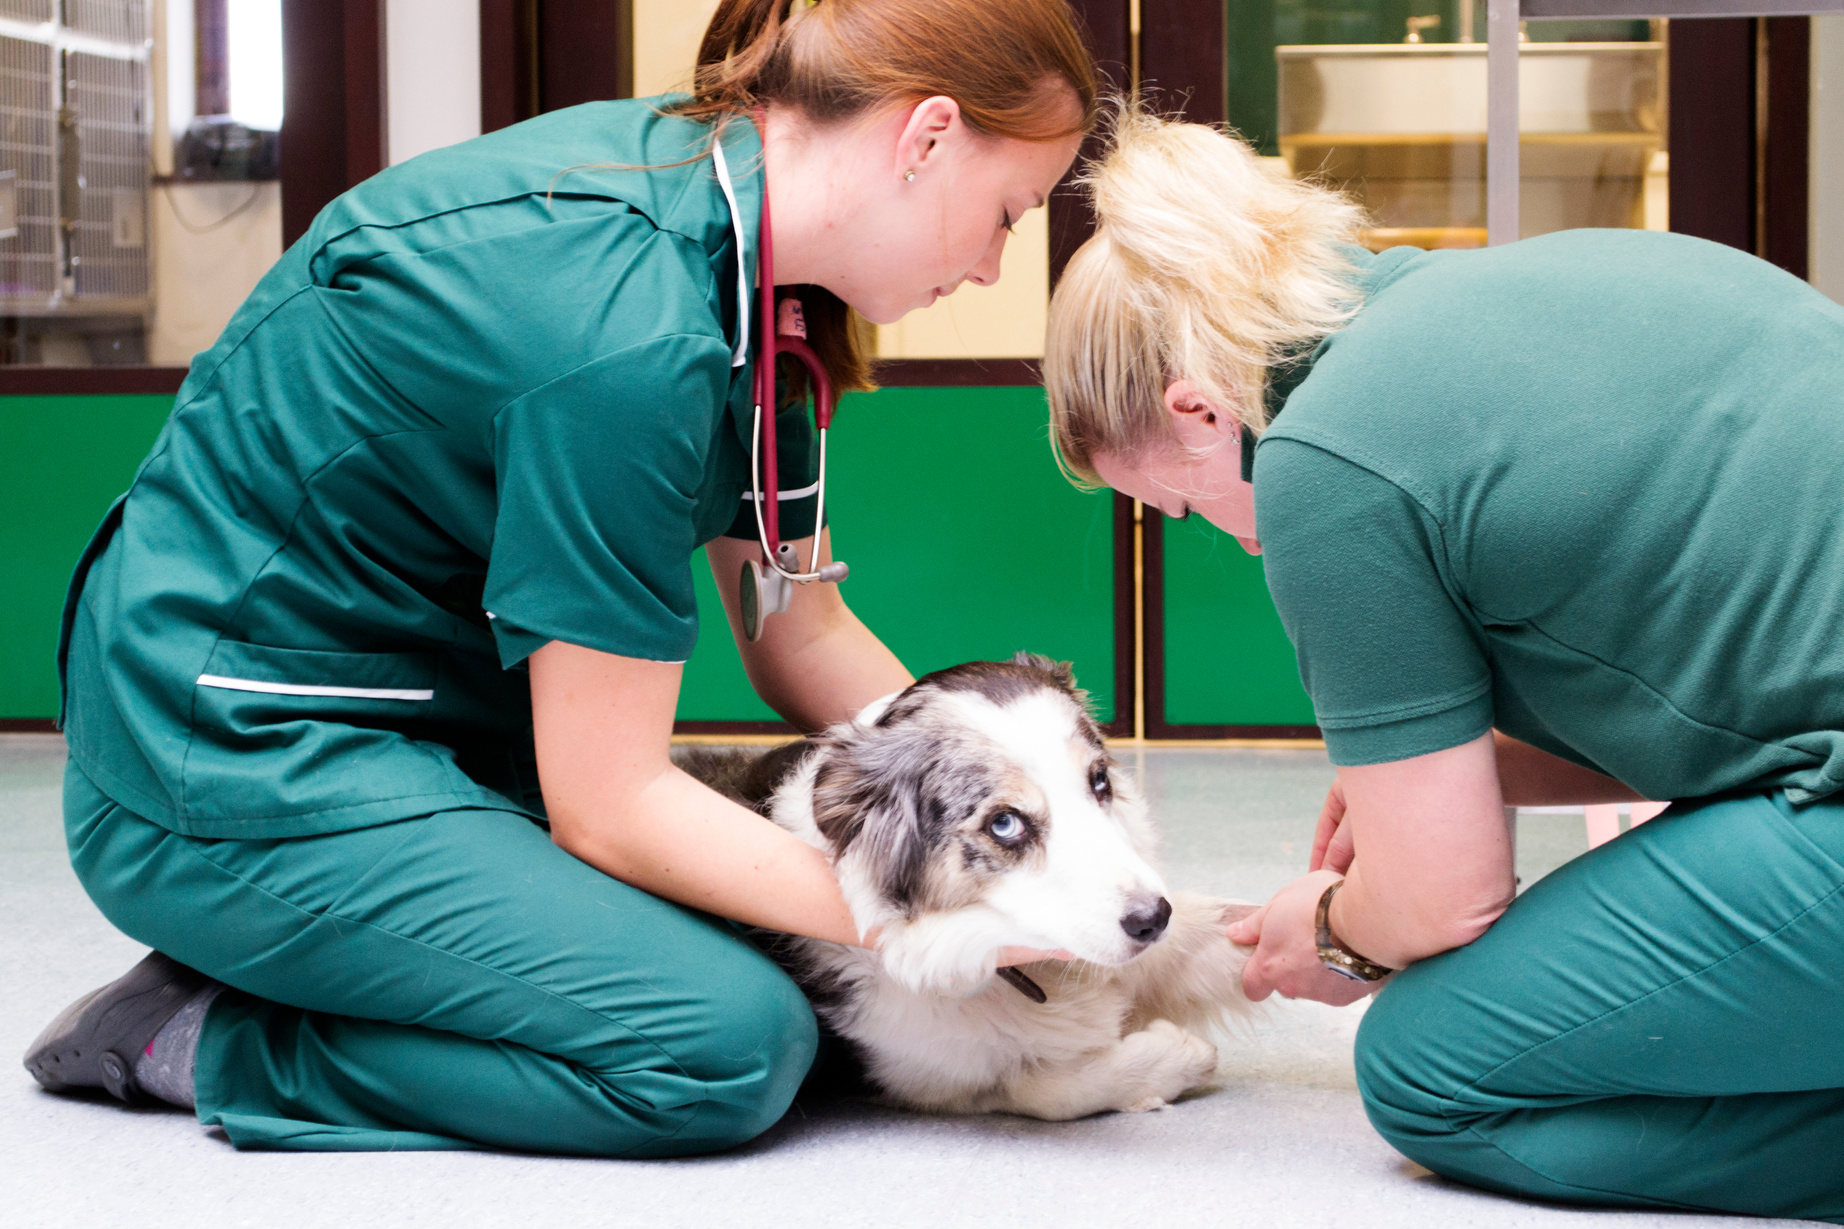 Injured dog at veterinary surgery